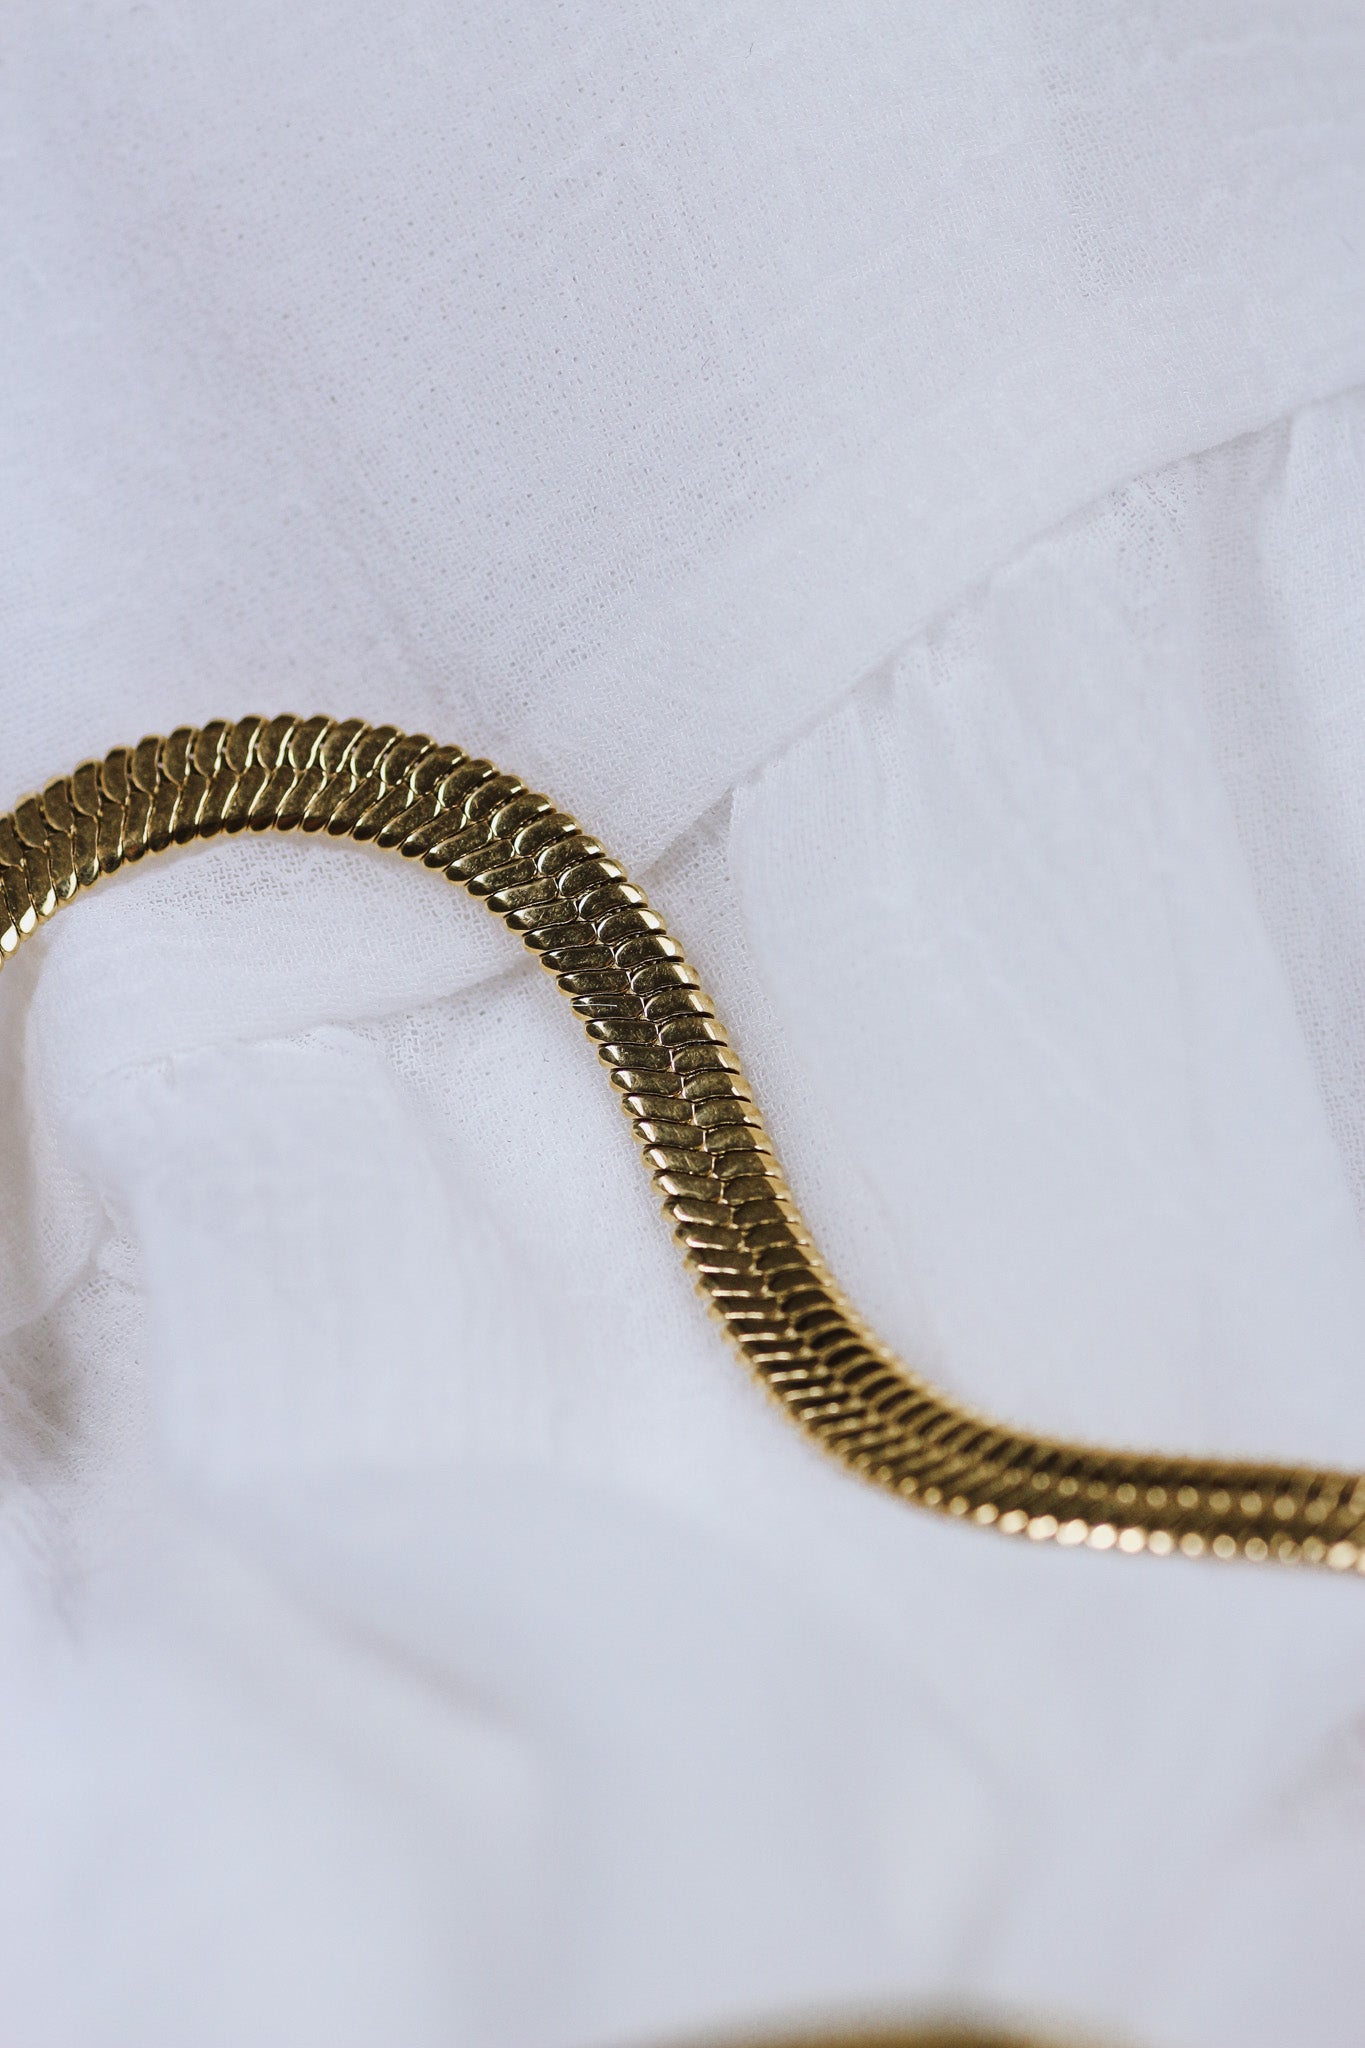 Gold Snake Necklace